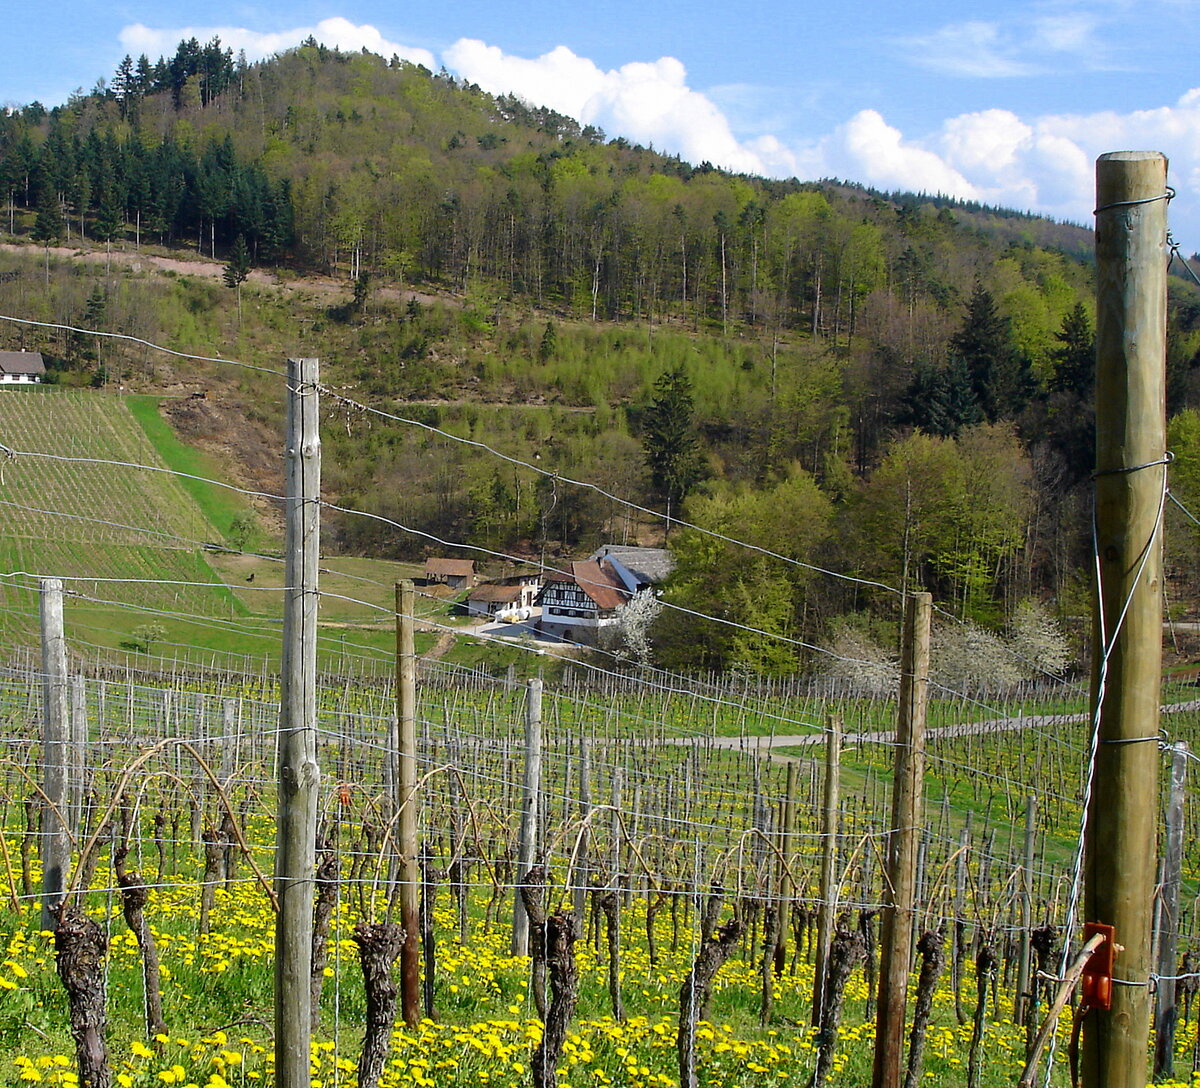 Ortenau, in den Weinbergen oberhalb von Durbach, mit Blick auf das Gasthaus  Hummelswälder Hof , April 2006 